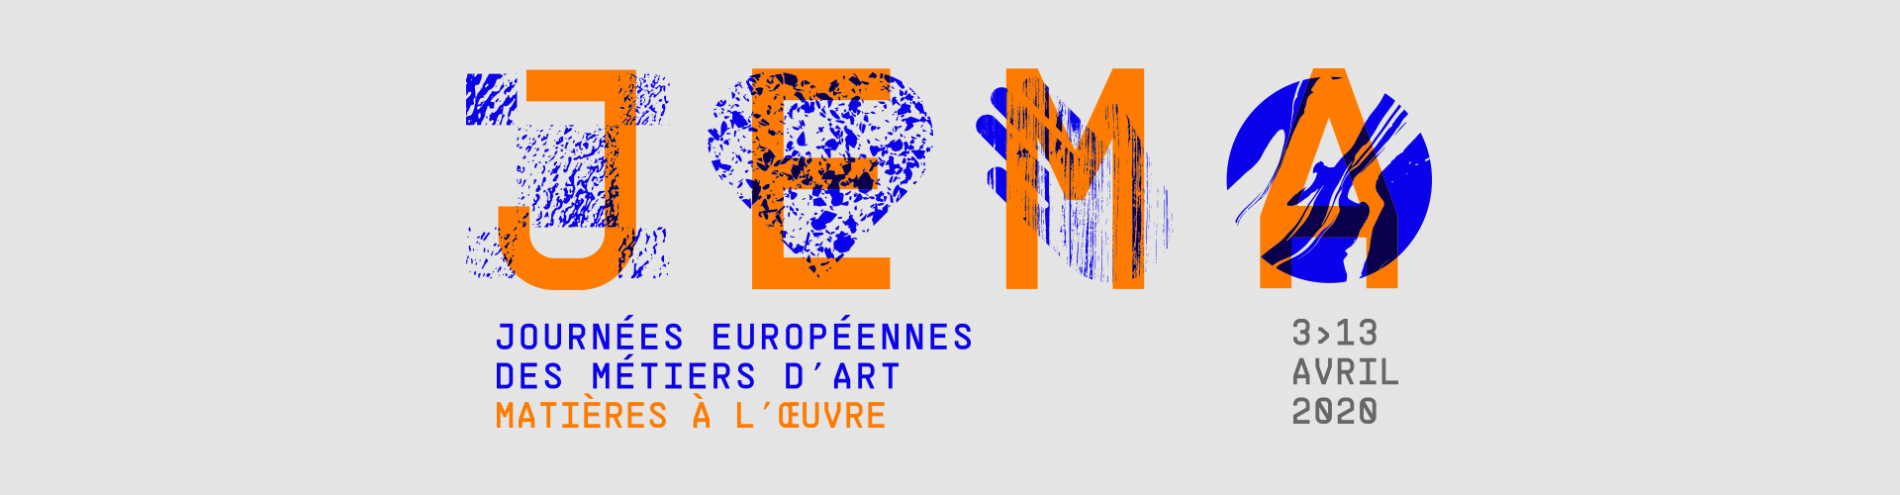 Journées Européennes des Métiers d’Art les 3, 4 et 5 avril 2020